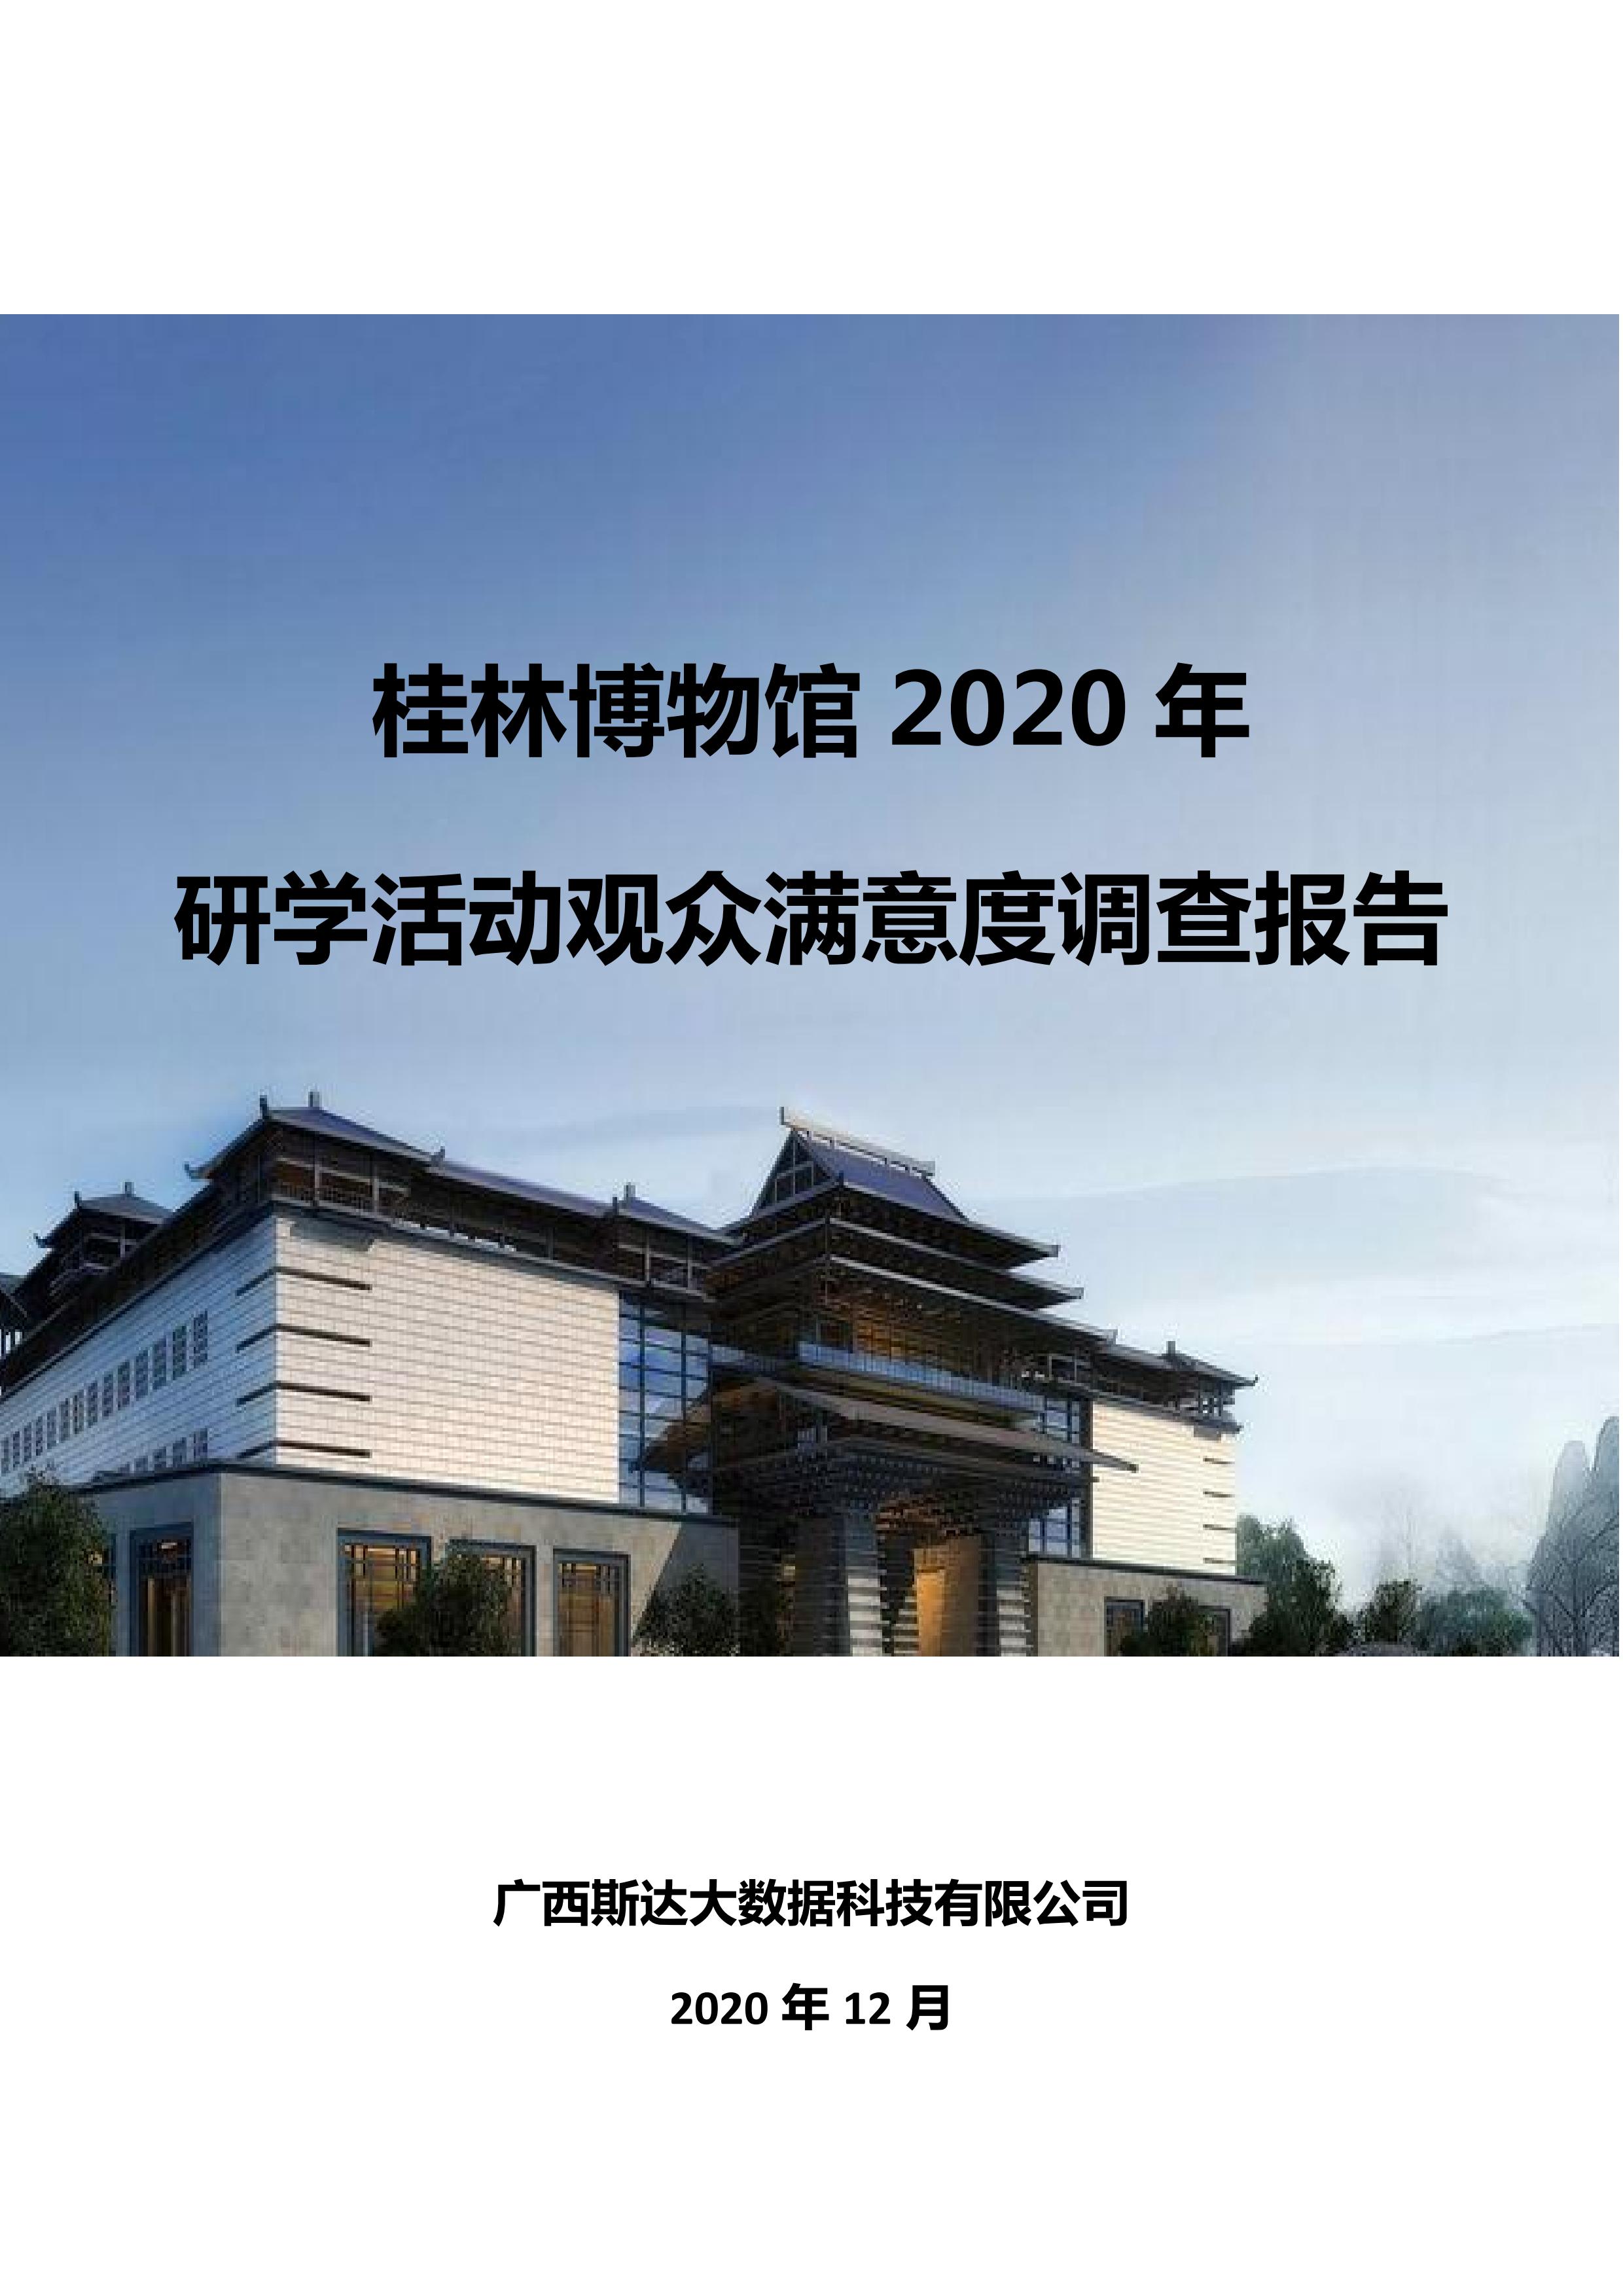 桂林博物馆2020年研学活动观众满意度调查报告_v3_00.jpg